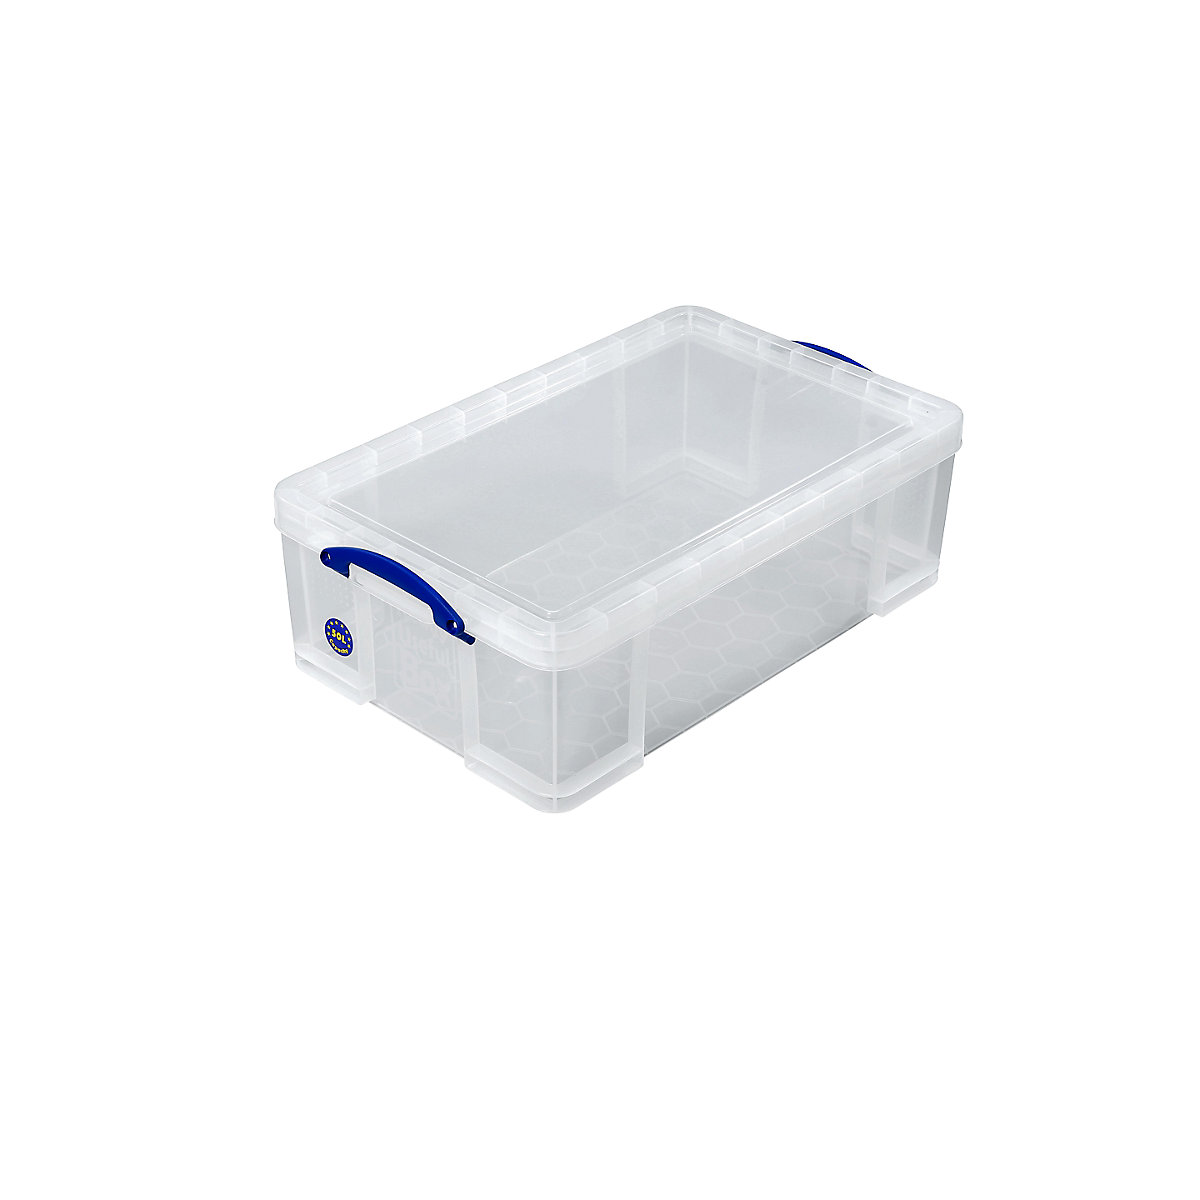 Stapelbox REALLY USEFUL, met deksel, inhoud 50 l, l x b x h = 710 x 440 x 230 mm-5